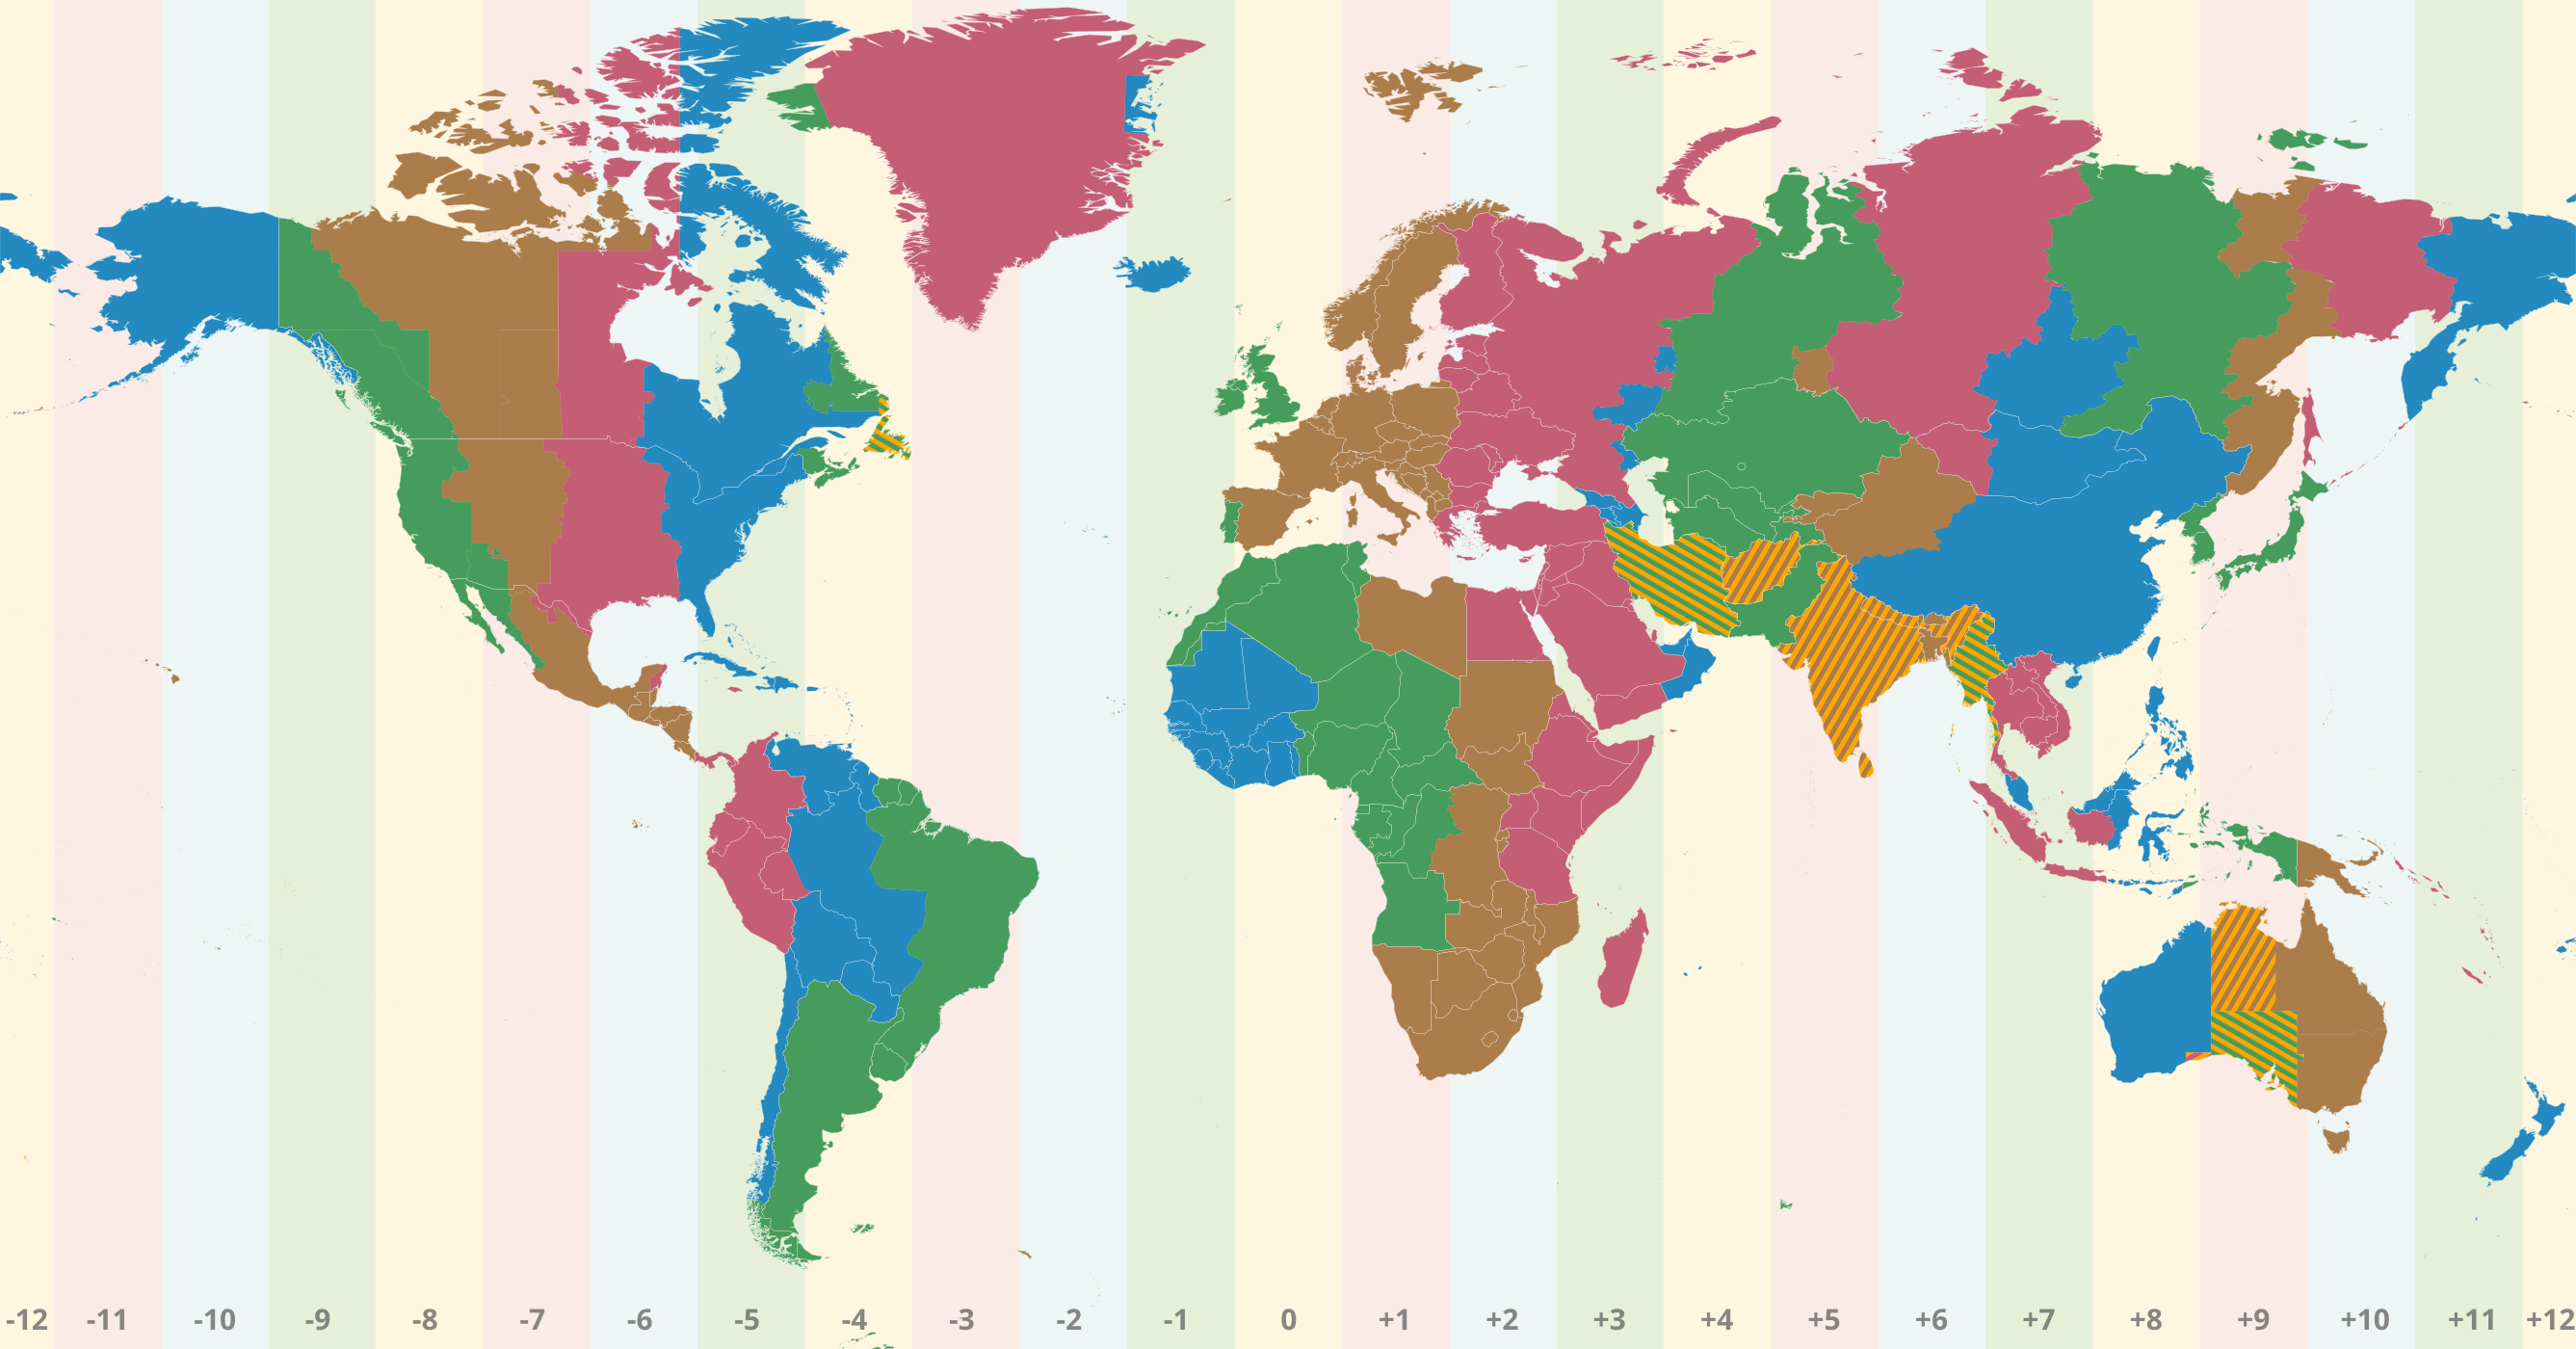 Mapa do mundo com o fuso horário UTC-2:30 em destaque